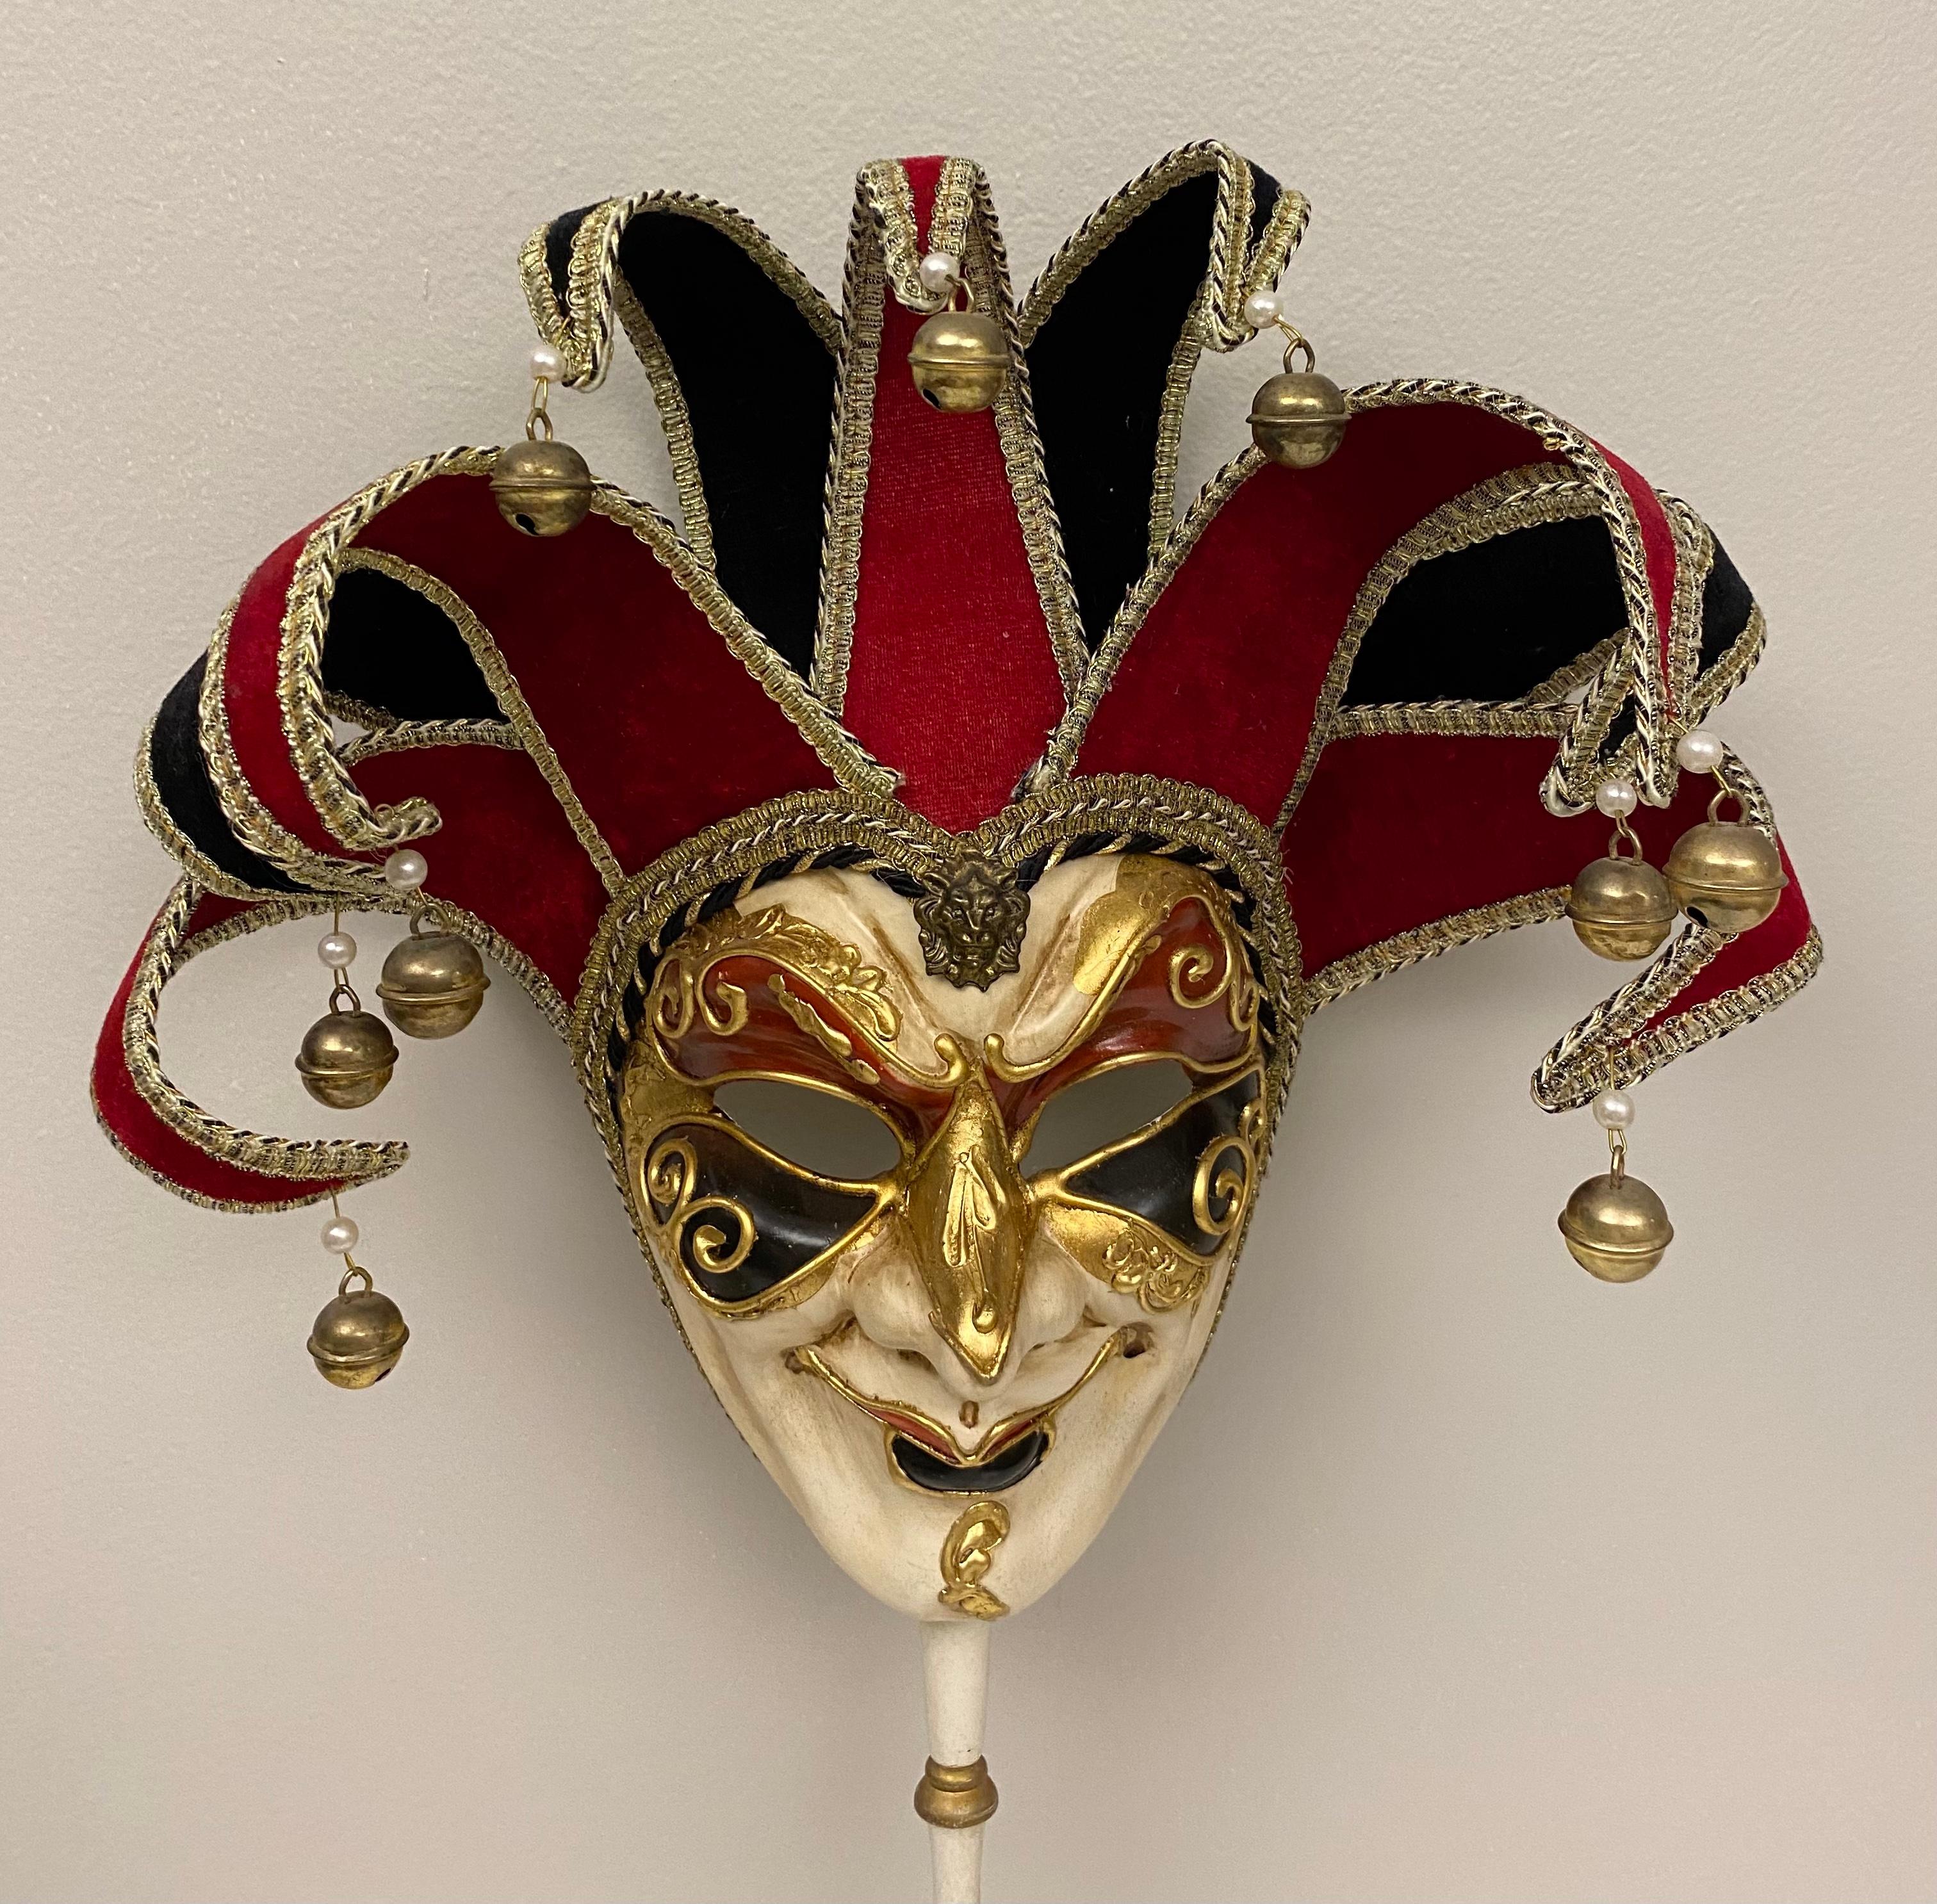 Ein Paar Volkskunst-Narrenmasken, die original venezianische Kreationen sind, vollständig von Hand gezeichnet und handgefertigt, um 2000. Italienische Künstler haben diese Stücke unter Wahrung der handwerklichen Traditionen und nach